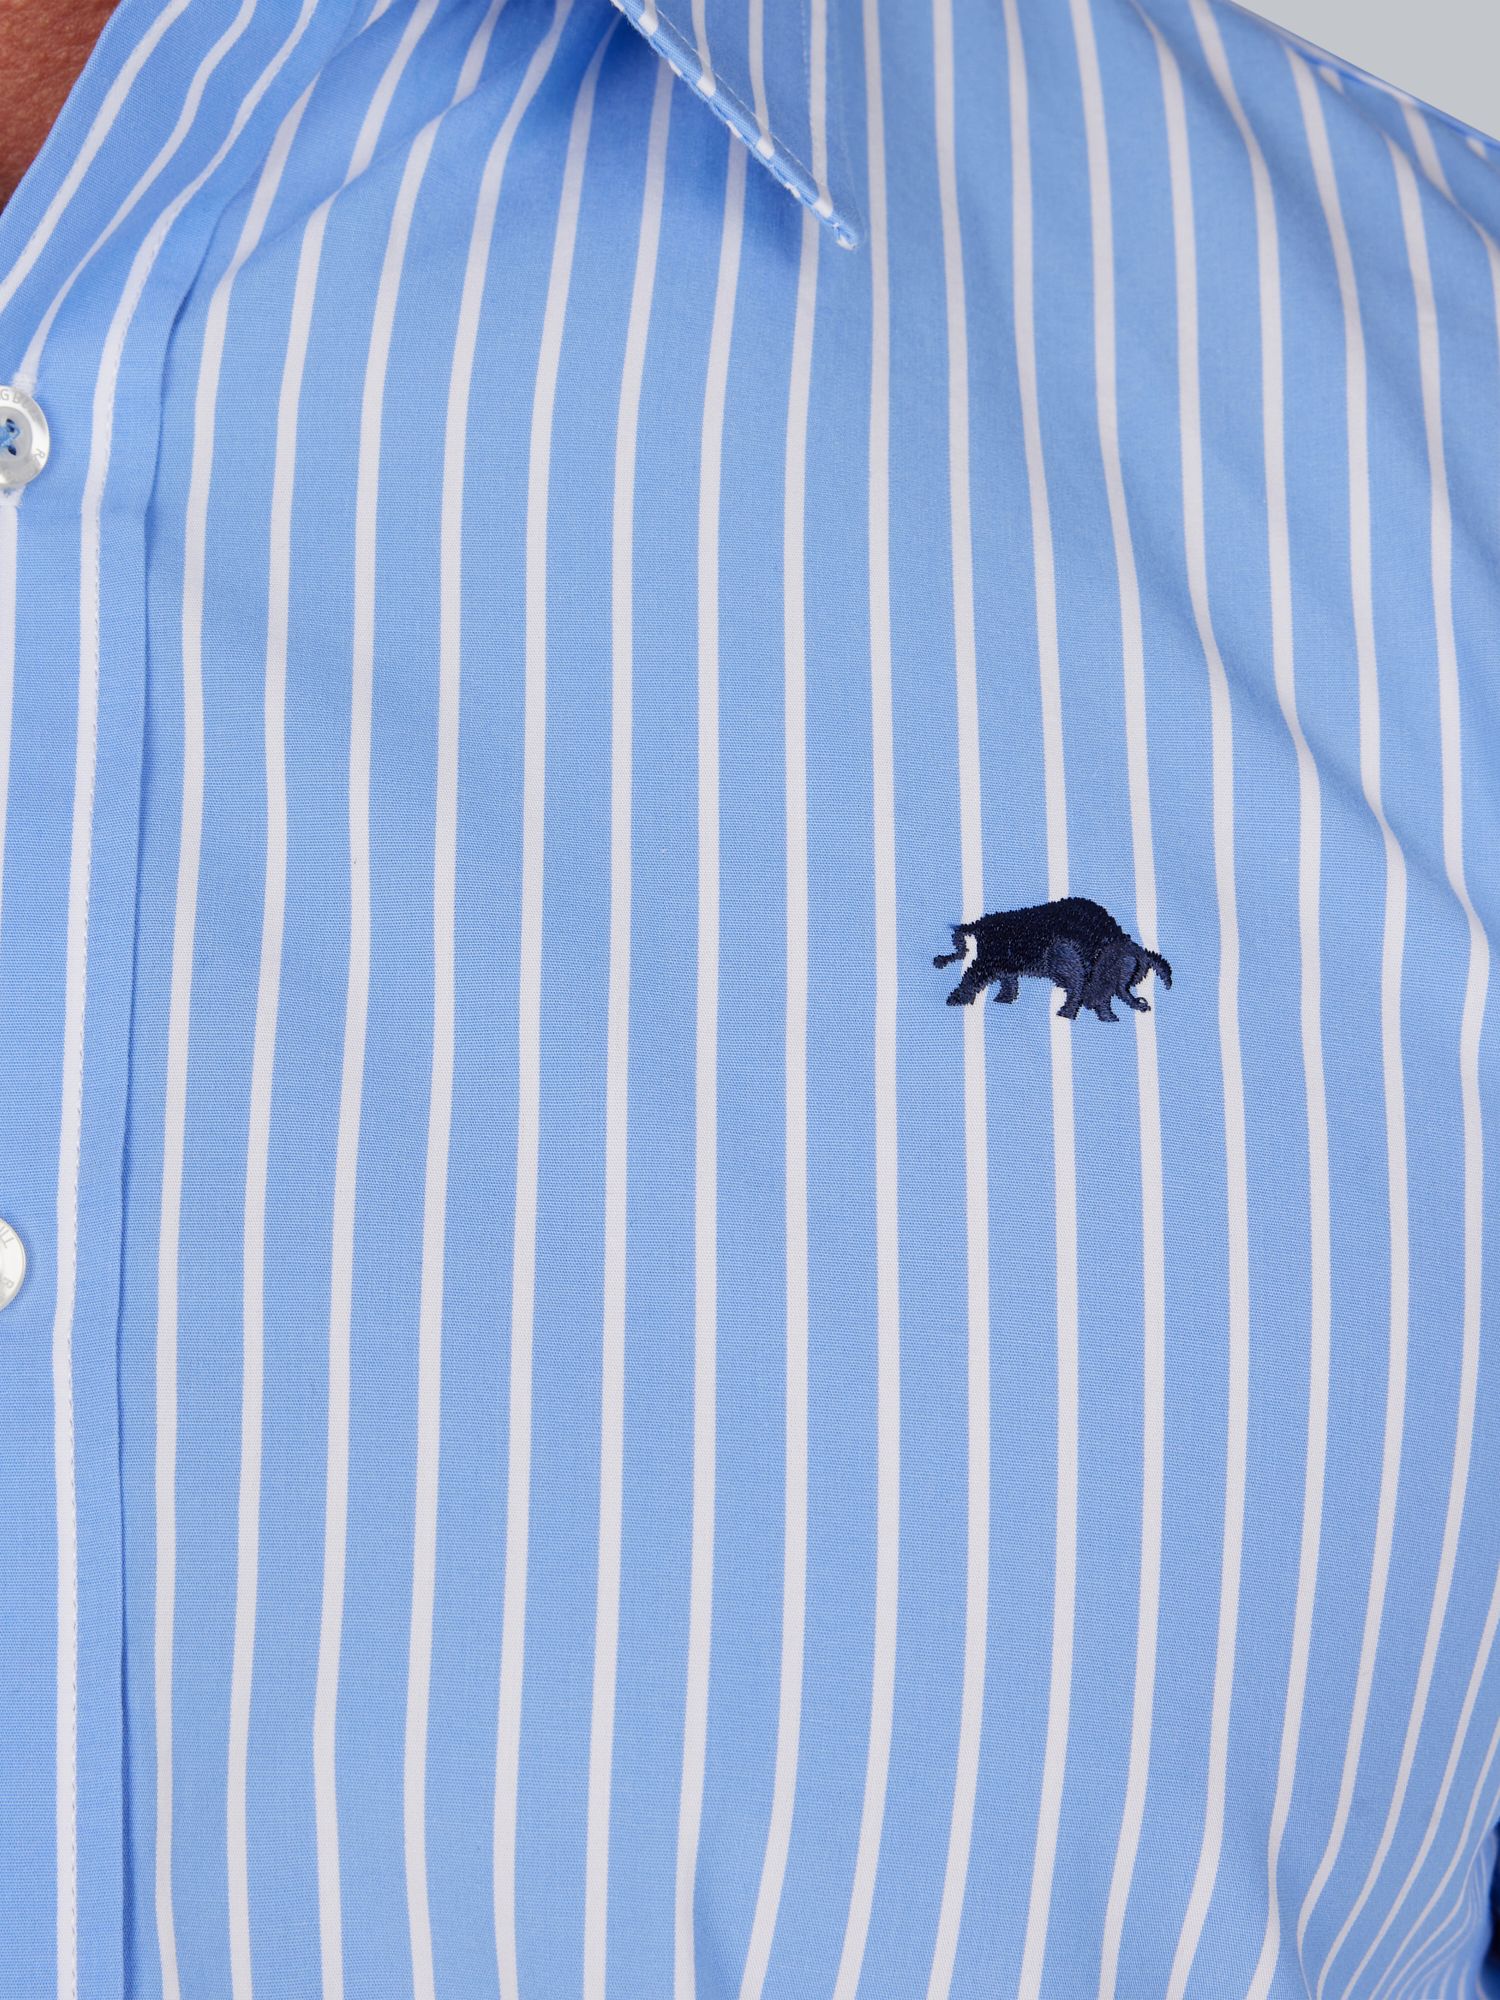 Buy Raging Bull Classic Long Sleeve Stripe Shirt, Blue/White Online at johnlewis.com